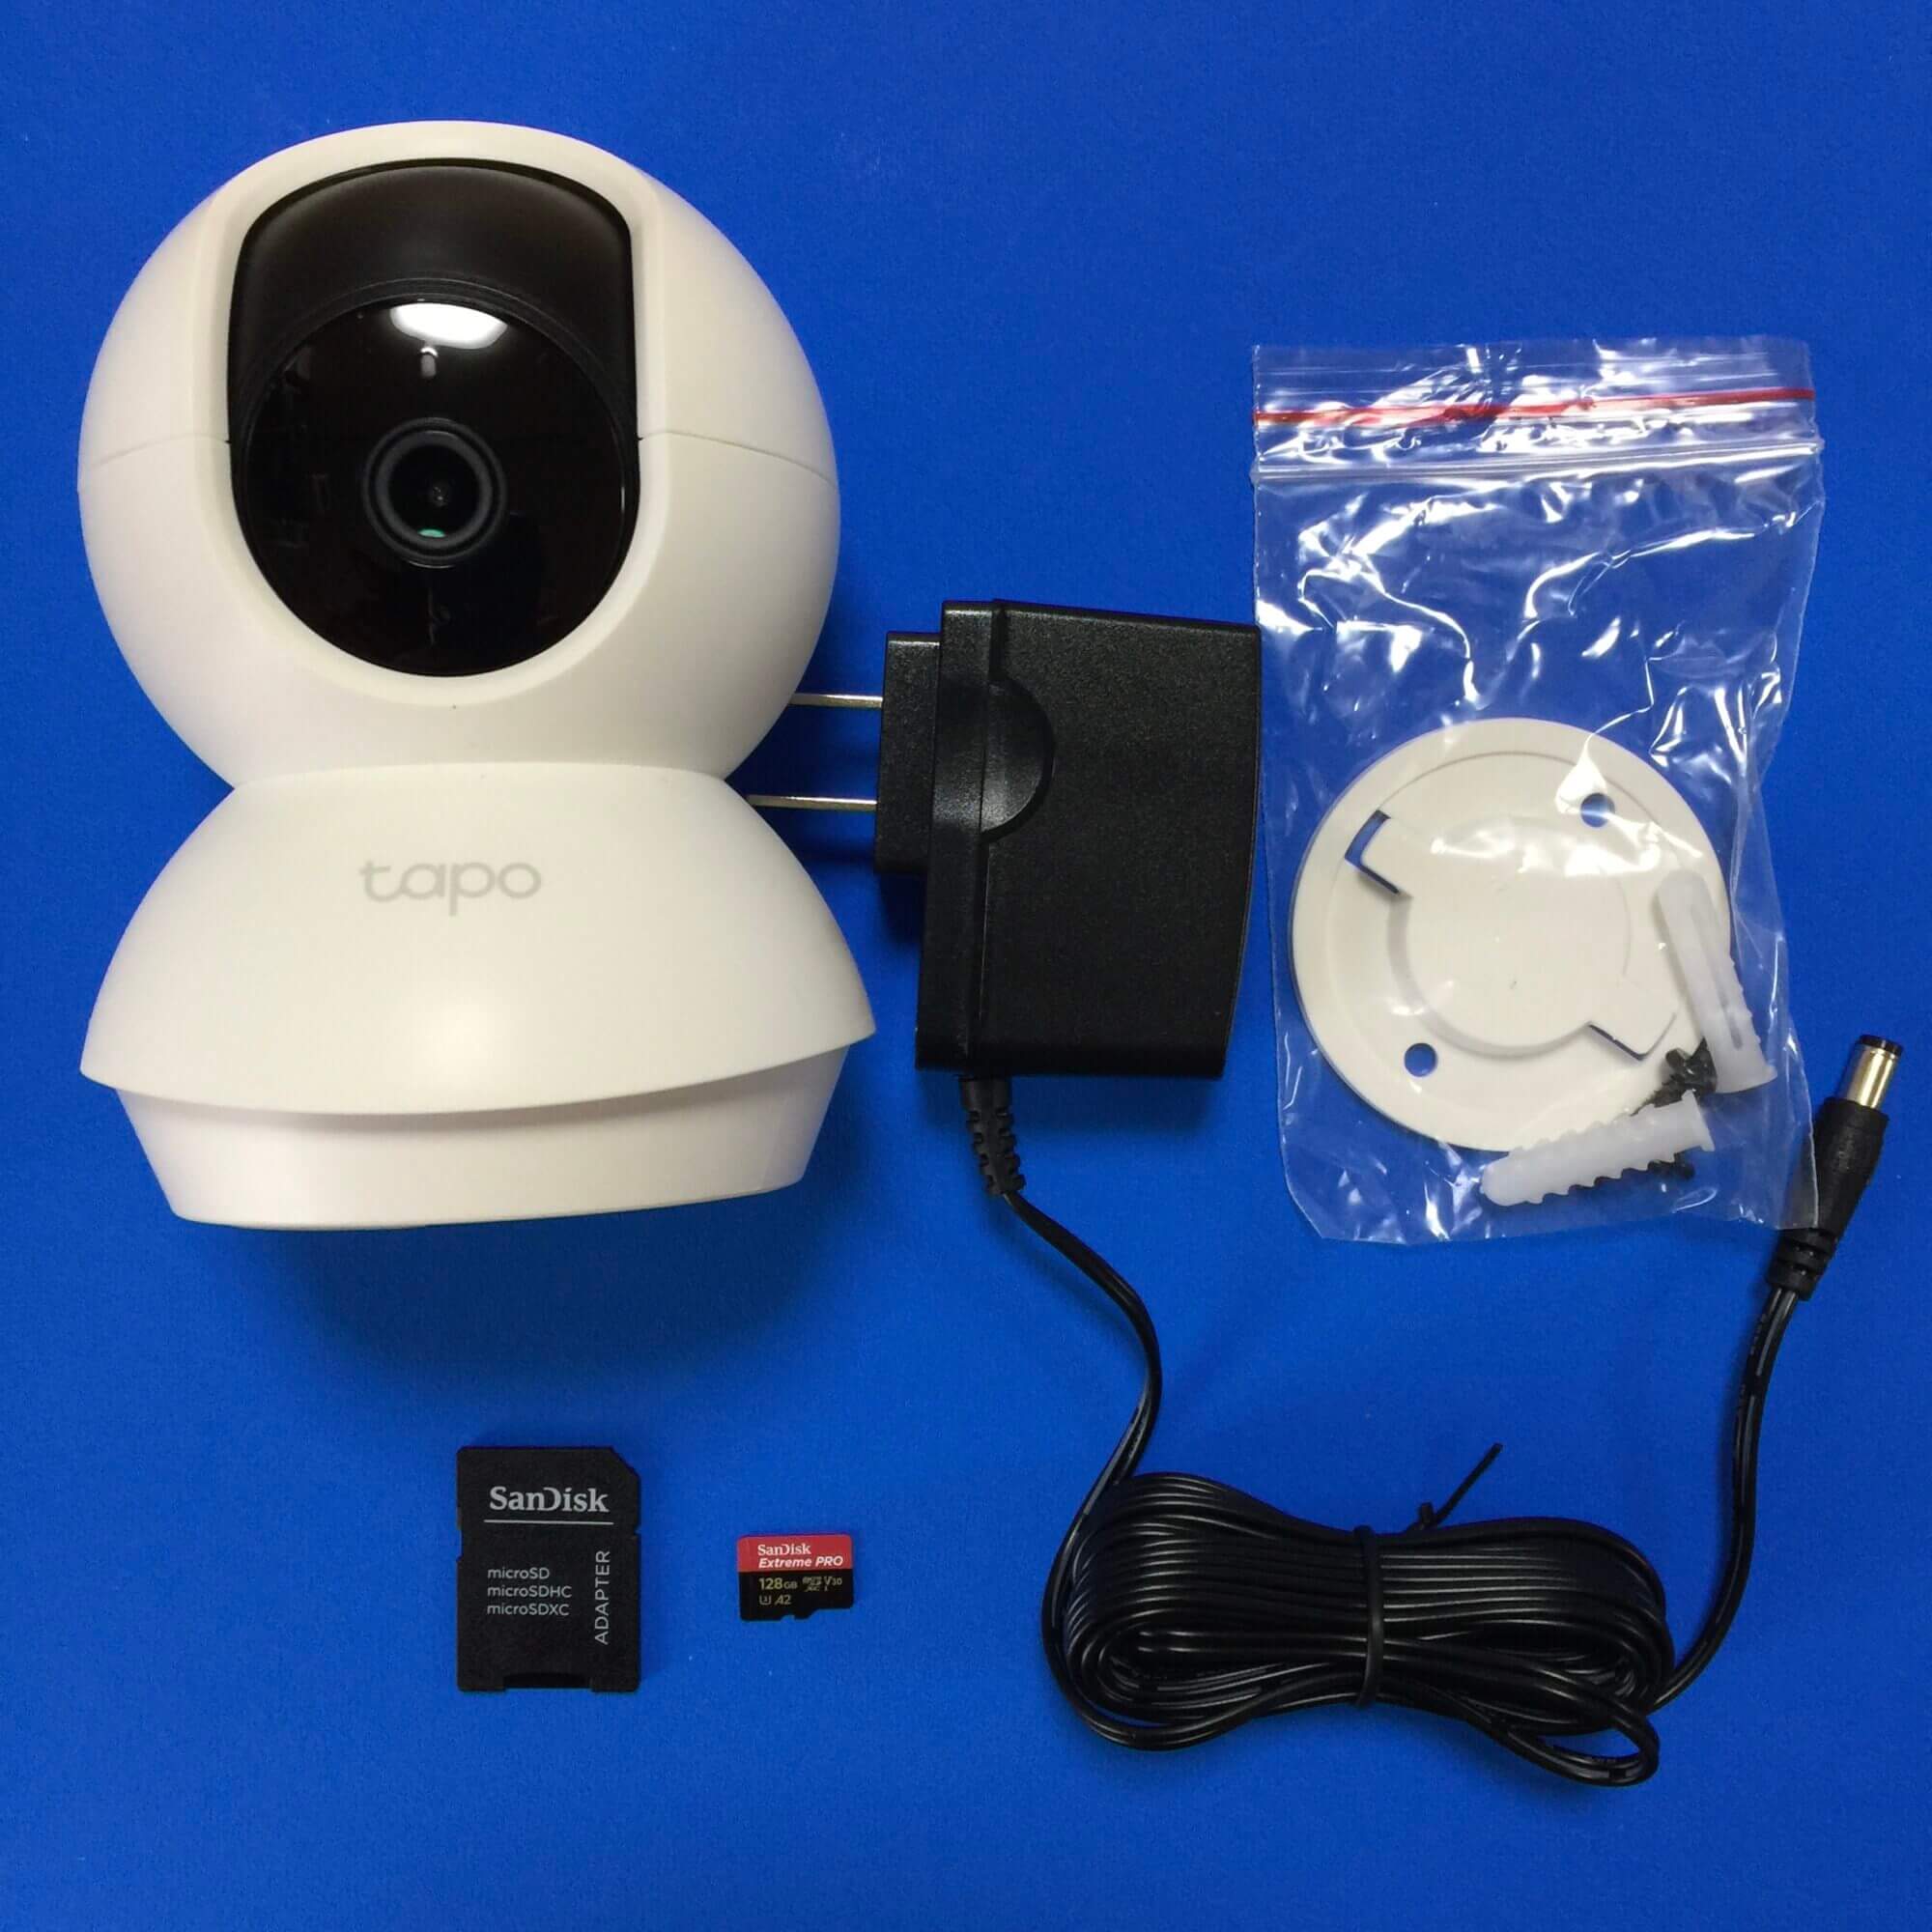 [Gear] Synology NAS対応 IPカメラ – TP-Link Tapo C200 – 自宅に導入してみた 2021/02/07] ID27455